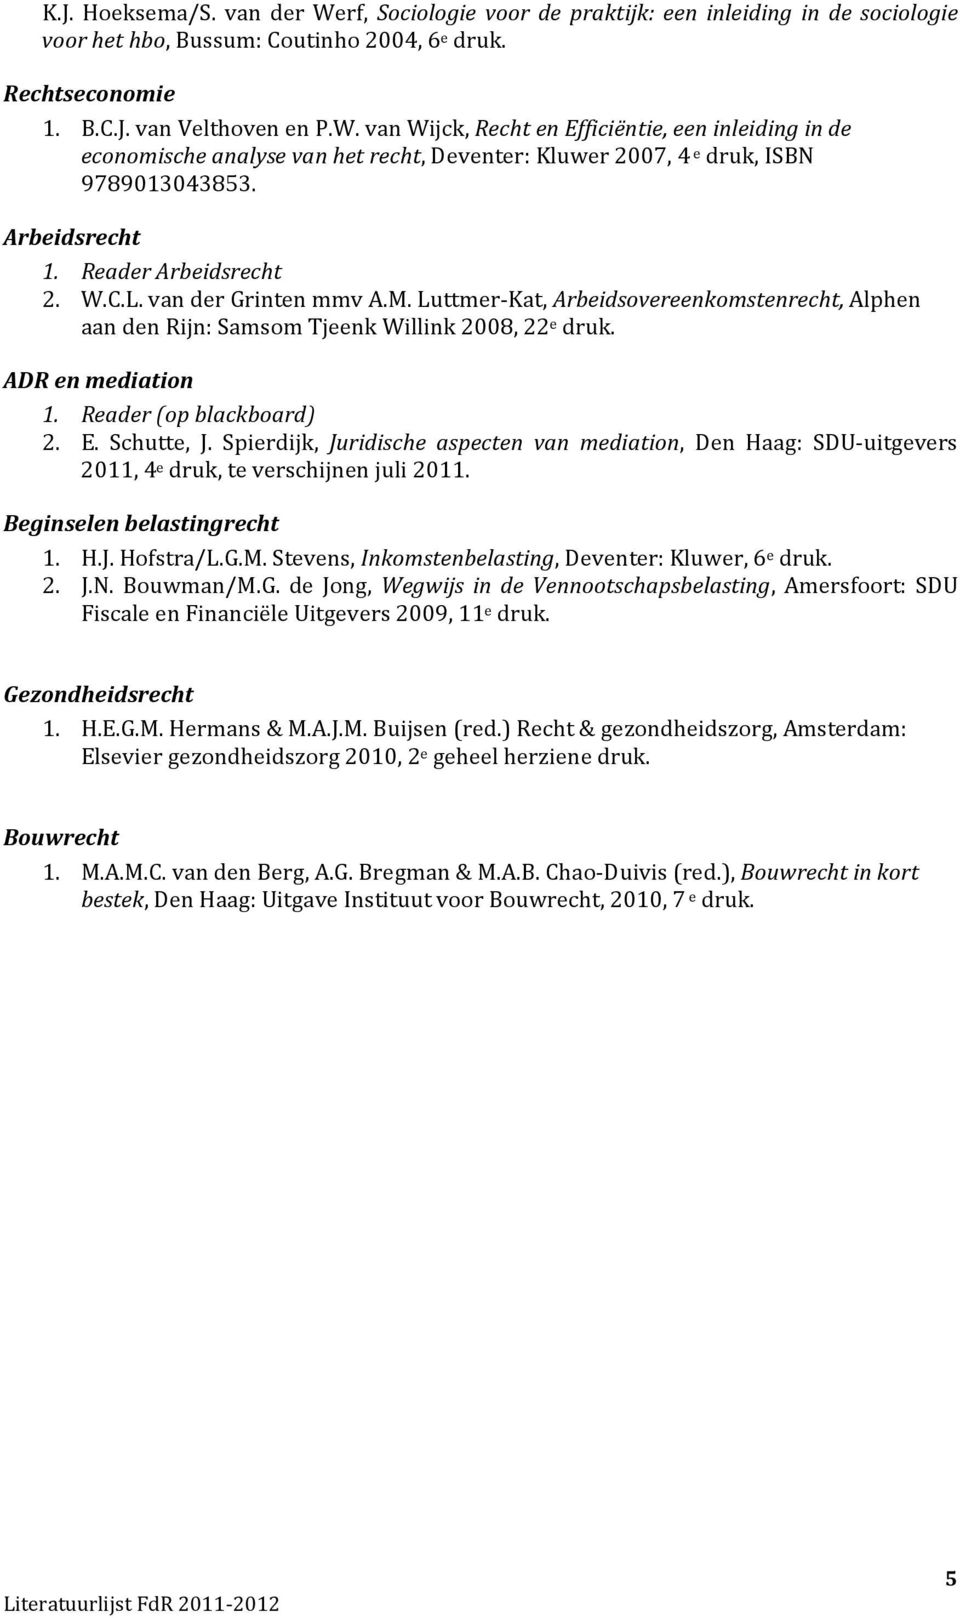 Reader (op blackboard) 2. E. Schutte, J. Spierdijk, Juridische aspecten van mediation, Den Haag: SDU-uitgevers 2011, 4 e druk, te verschijnen juli 2011. Beginselen belastingrecht 1. H.J. Hofstra/L.G.